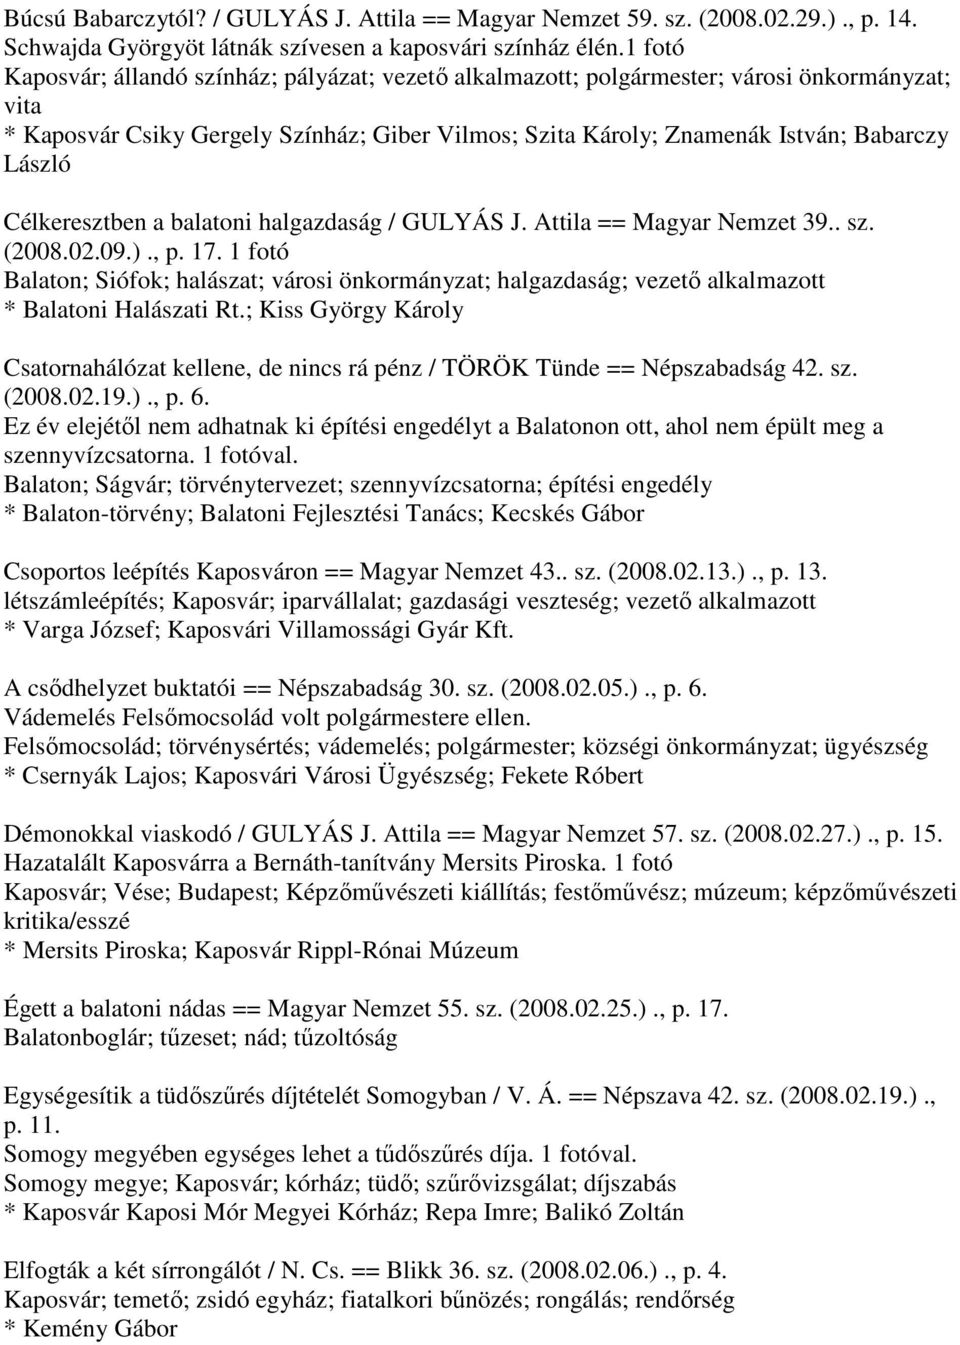 Célkeresztben a balatoni halgazdaság / GULYÁS J. Attila == Magyar Nemzet 39.. sz. (2008.02.09.)., p. 17.